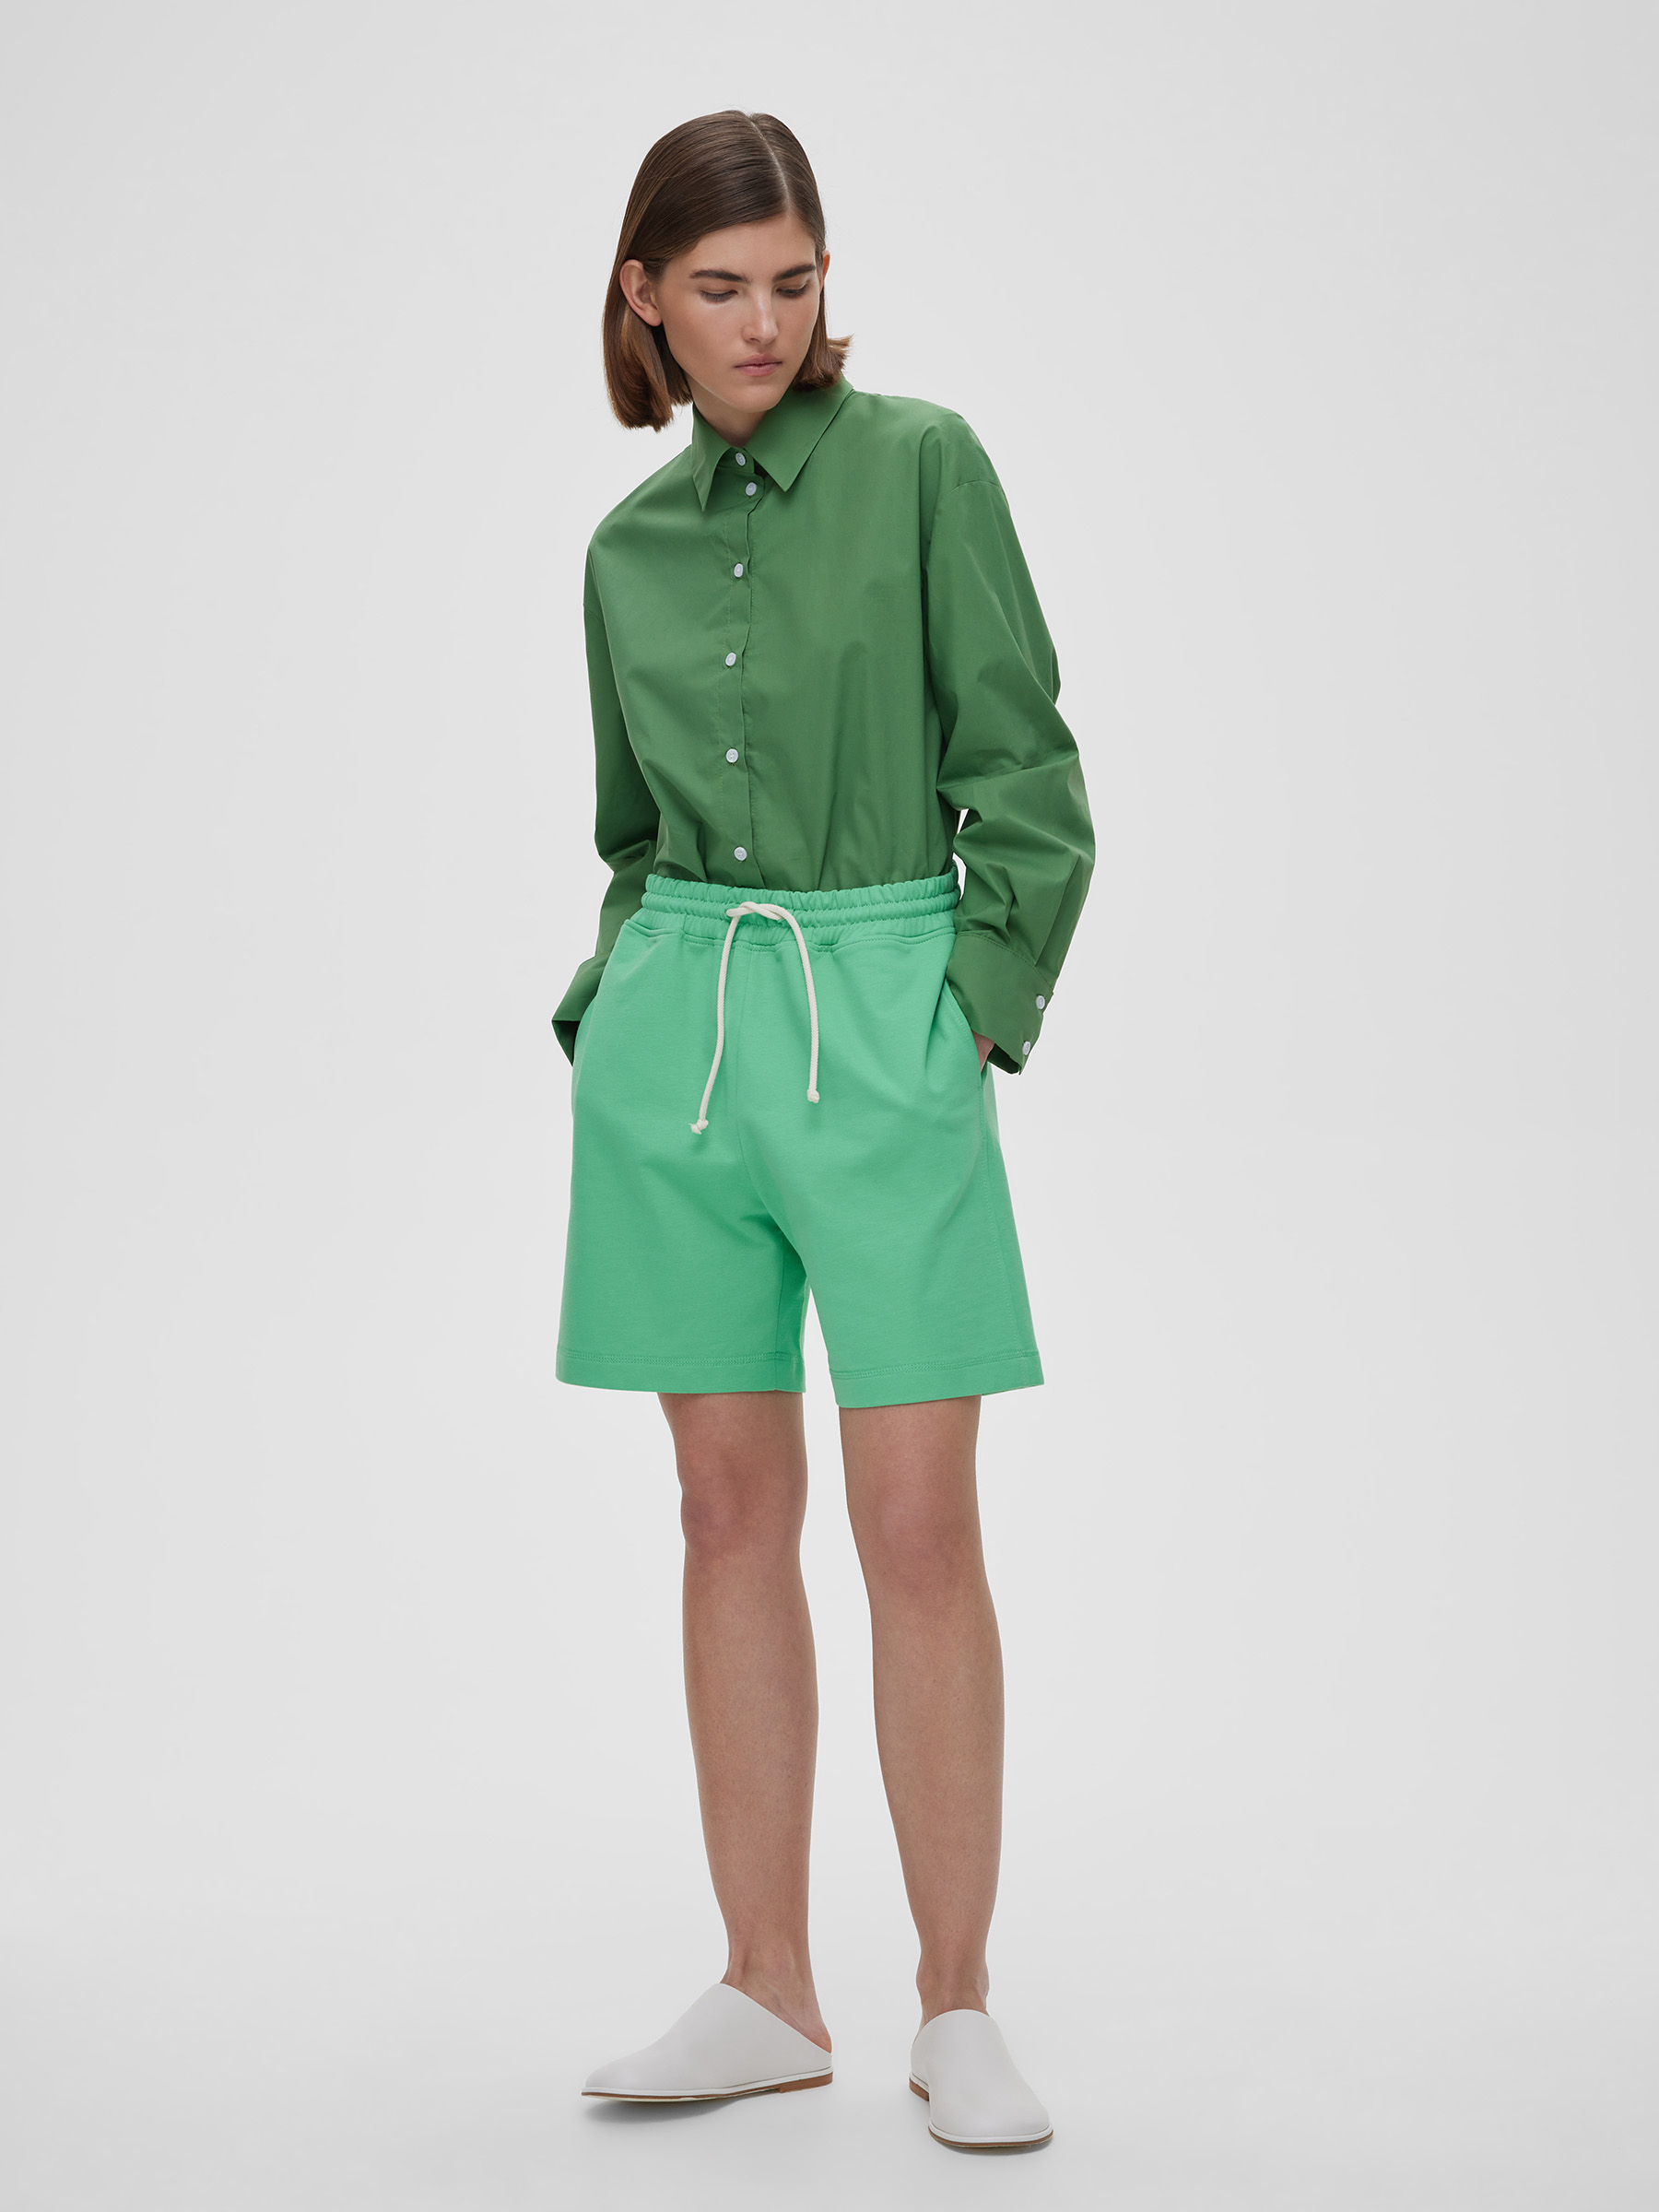 Шорты женские из футера, цвет – зеленый брюки женские свободные с карманами цвет – молочный